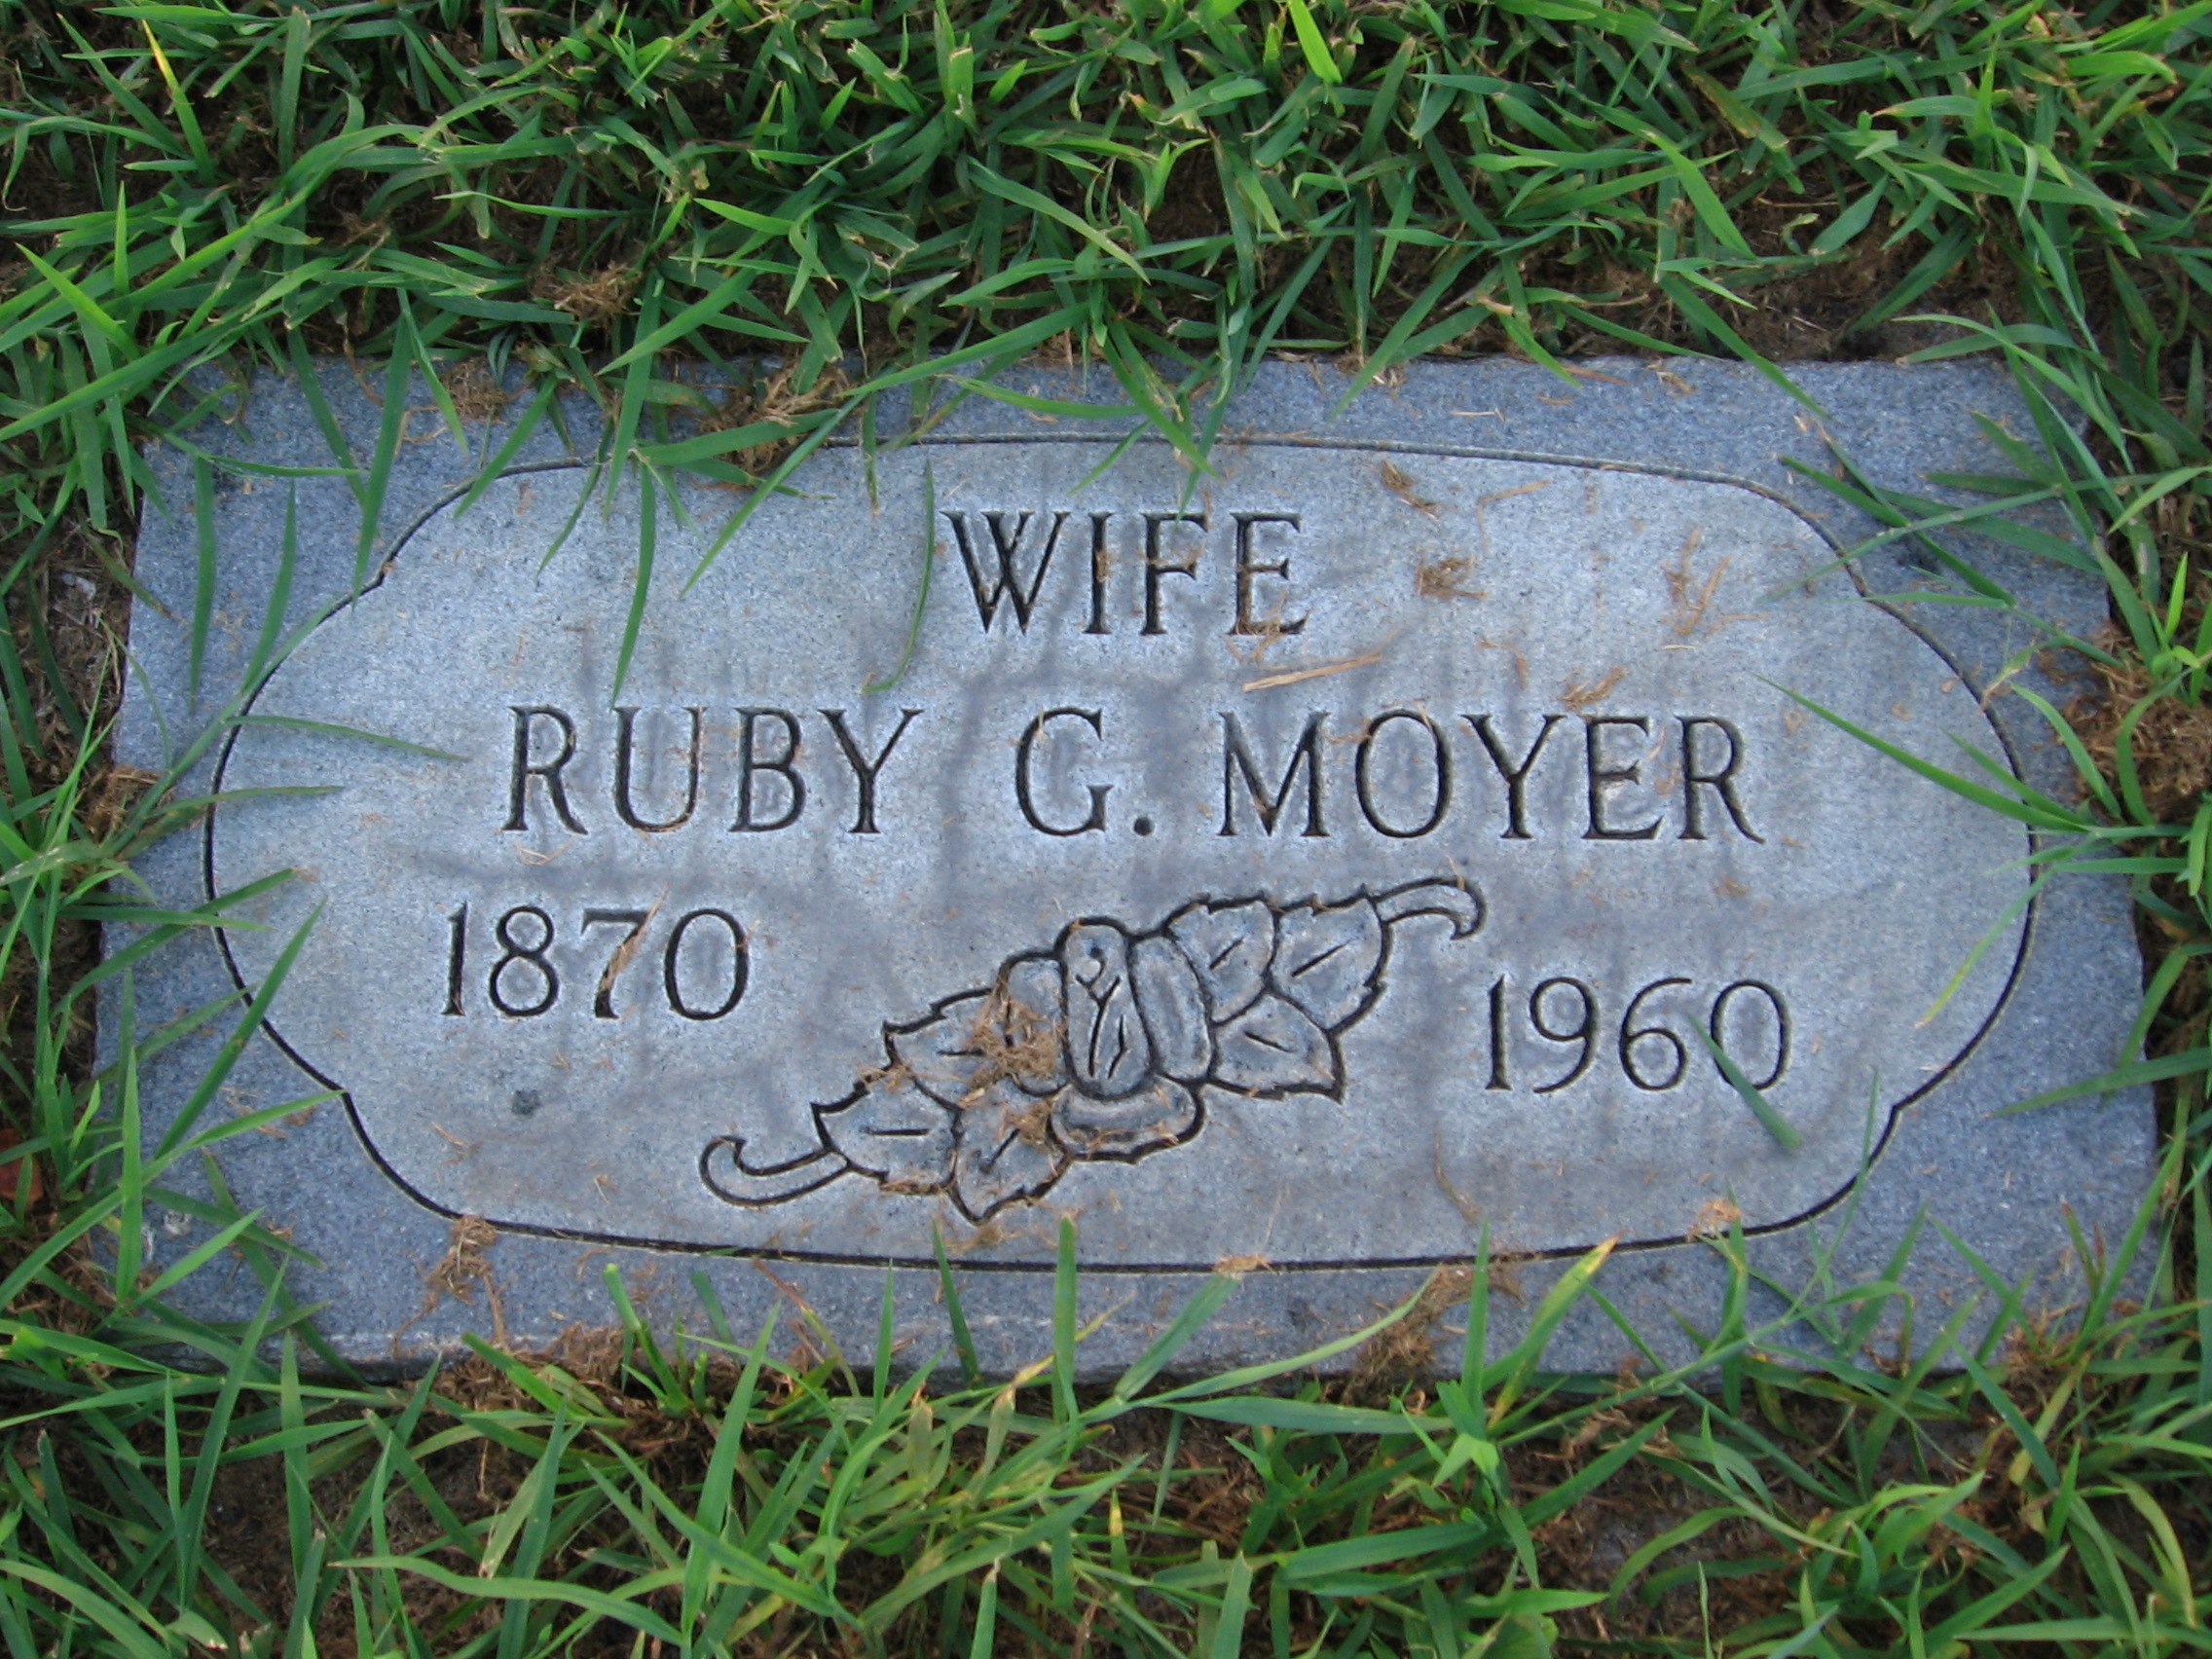 Ruby G Moyer